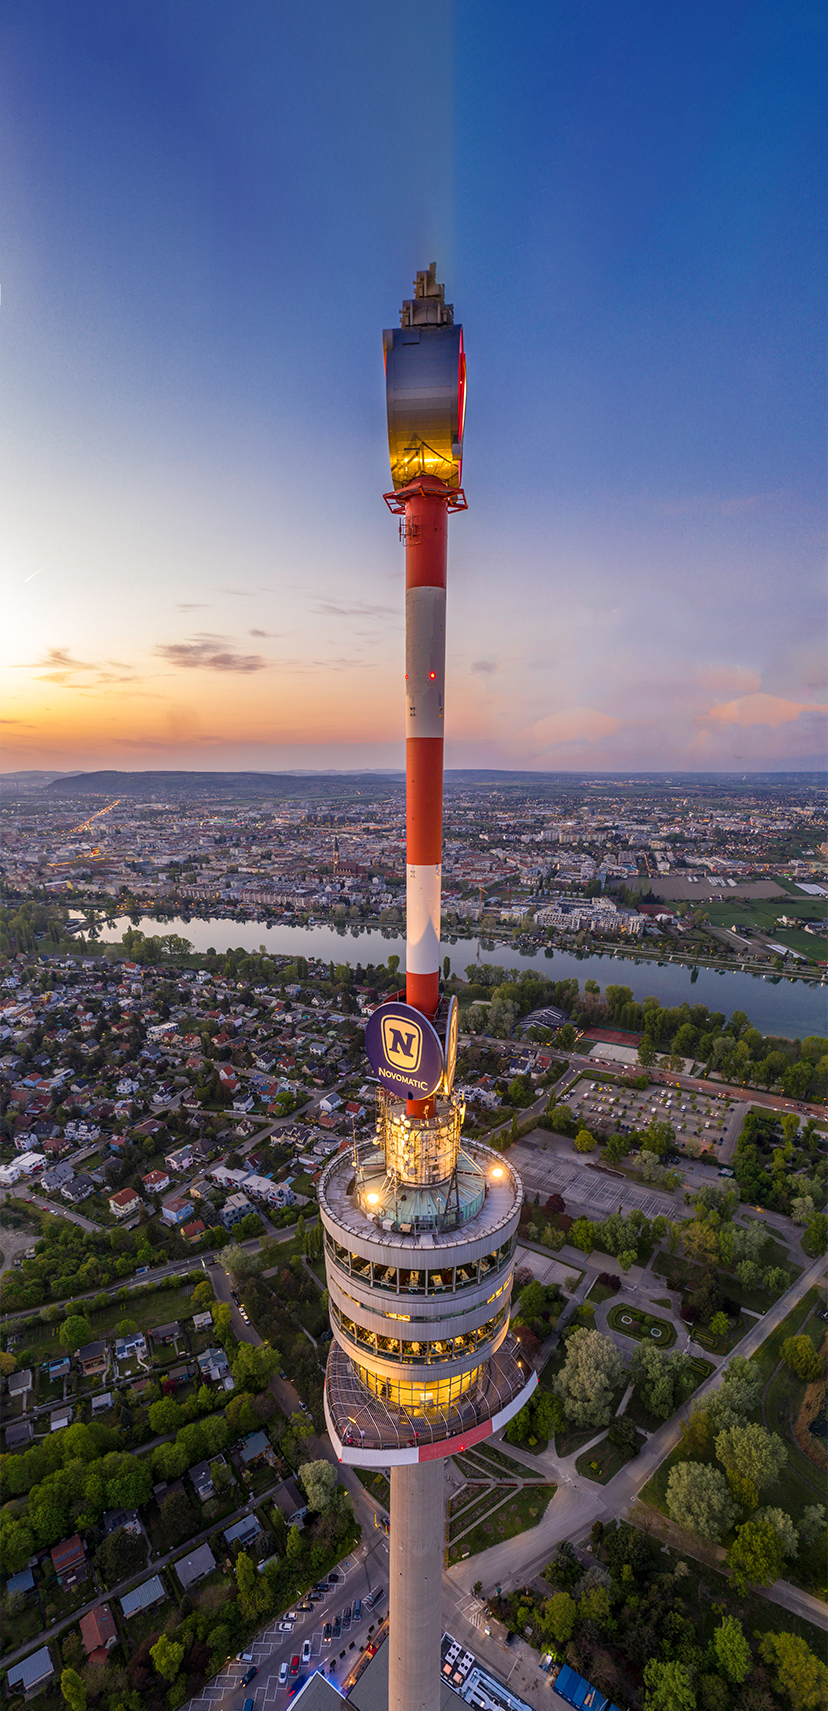 Donauturm / Danubetower